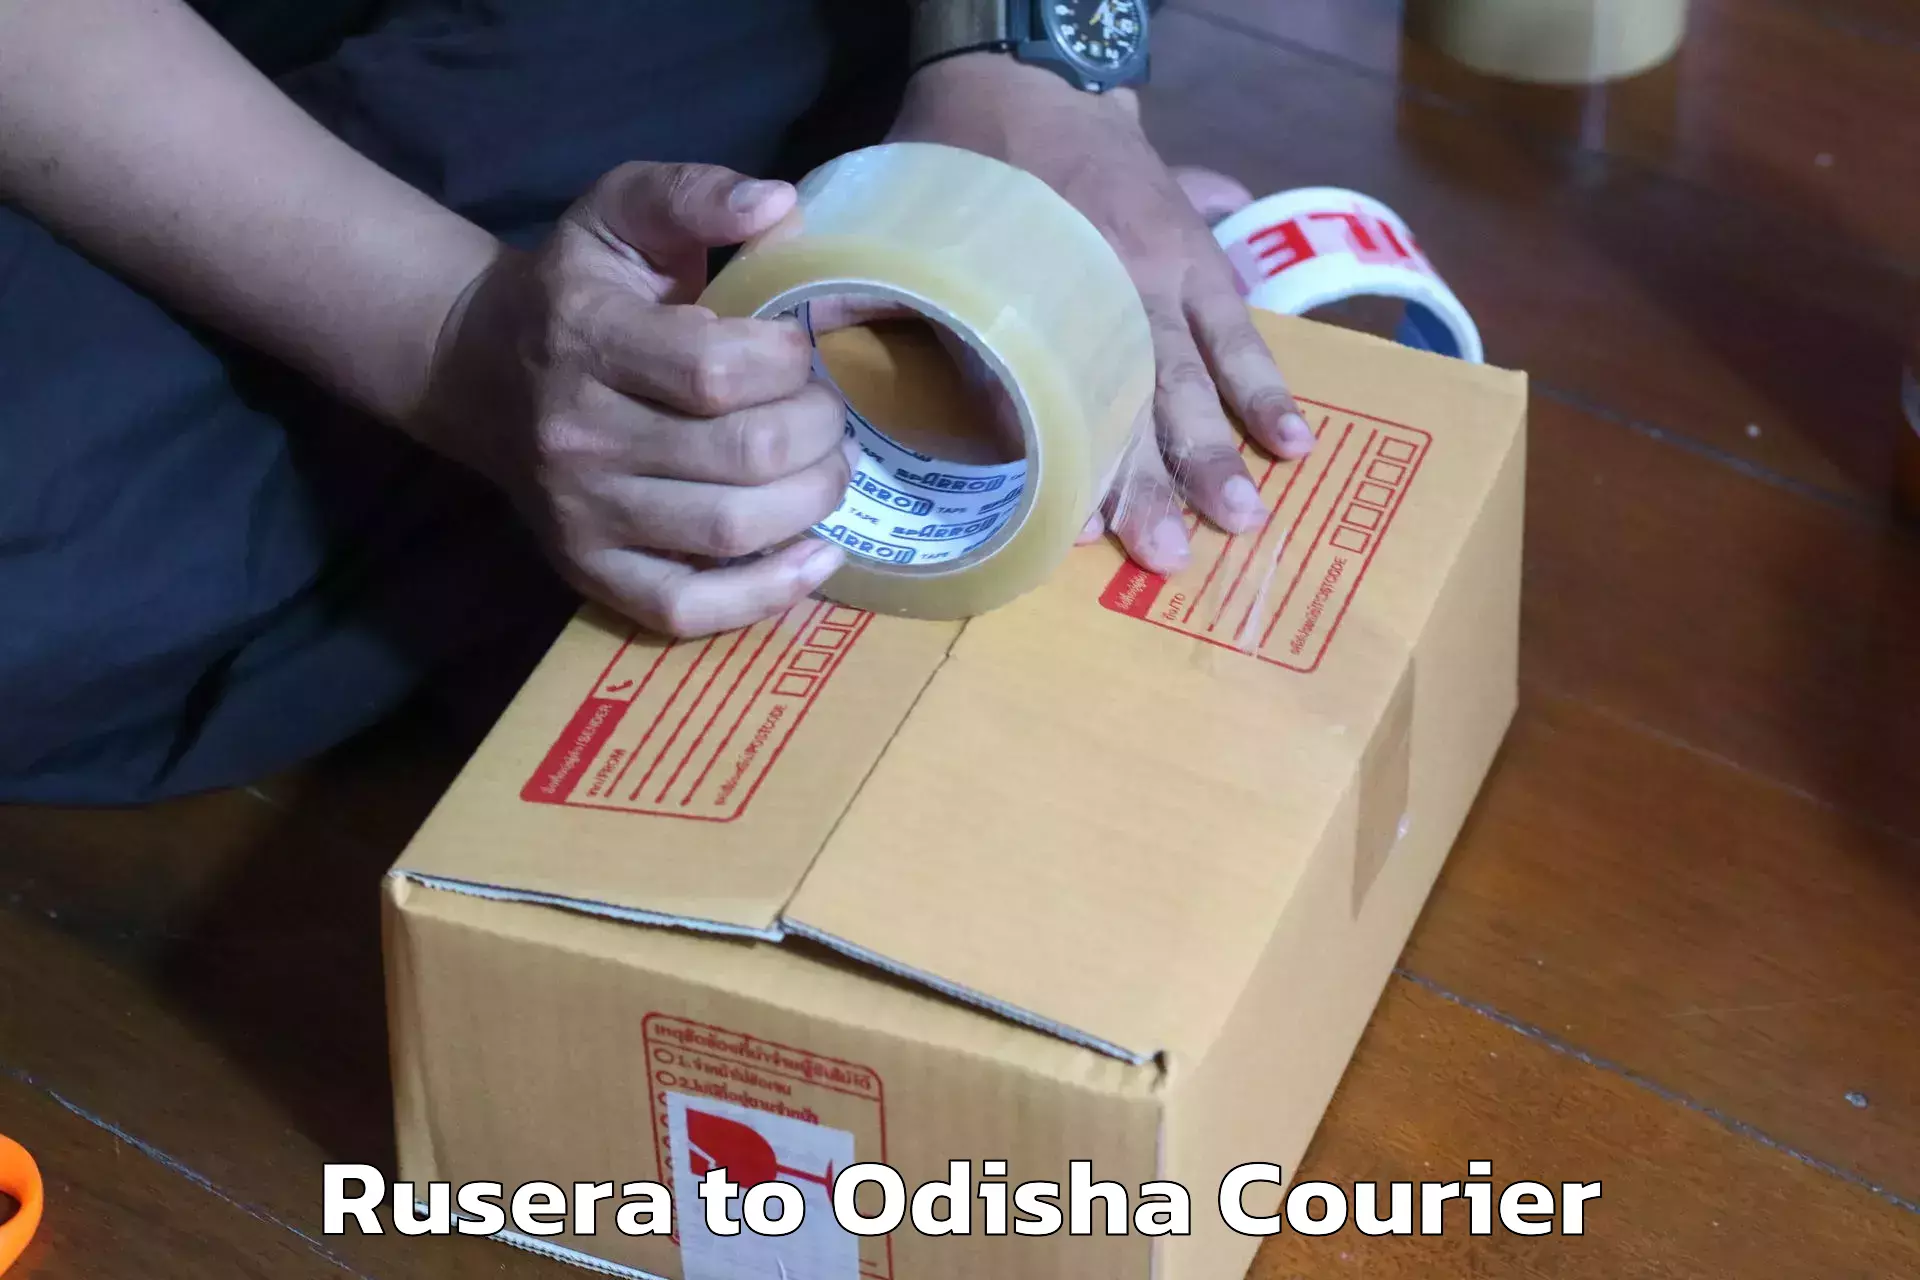 Furniture transport experts Rusera to Turanga